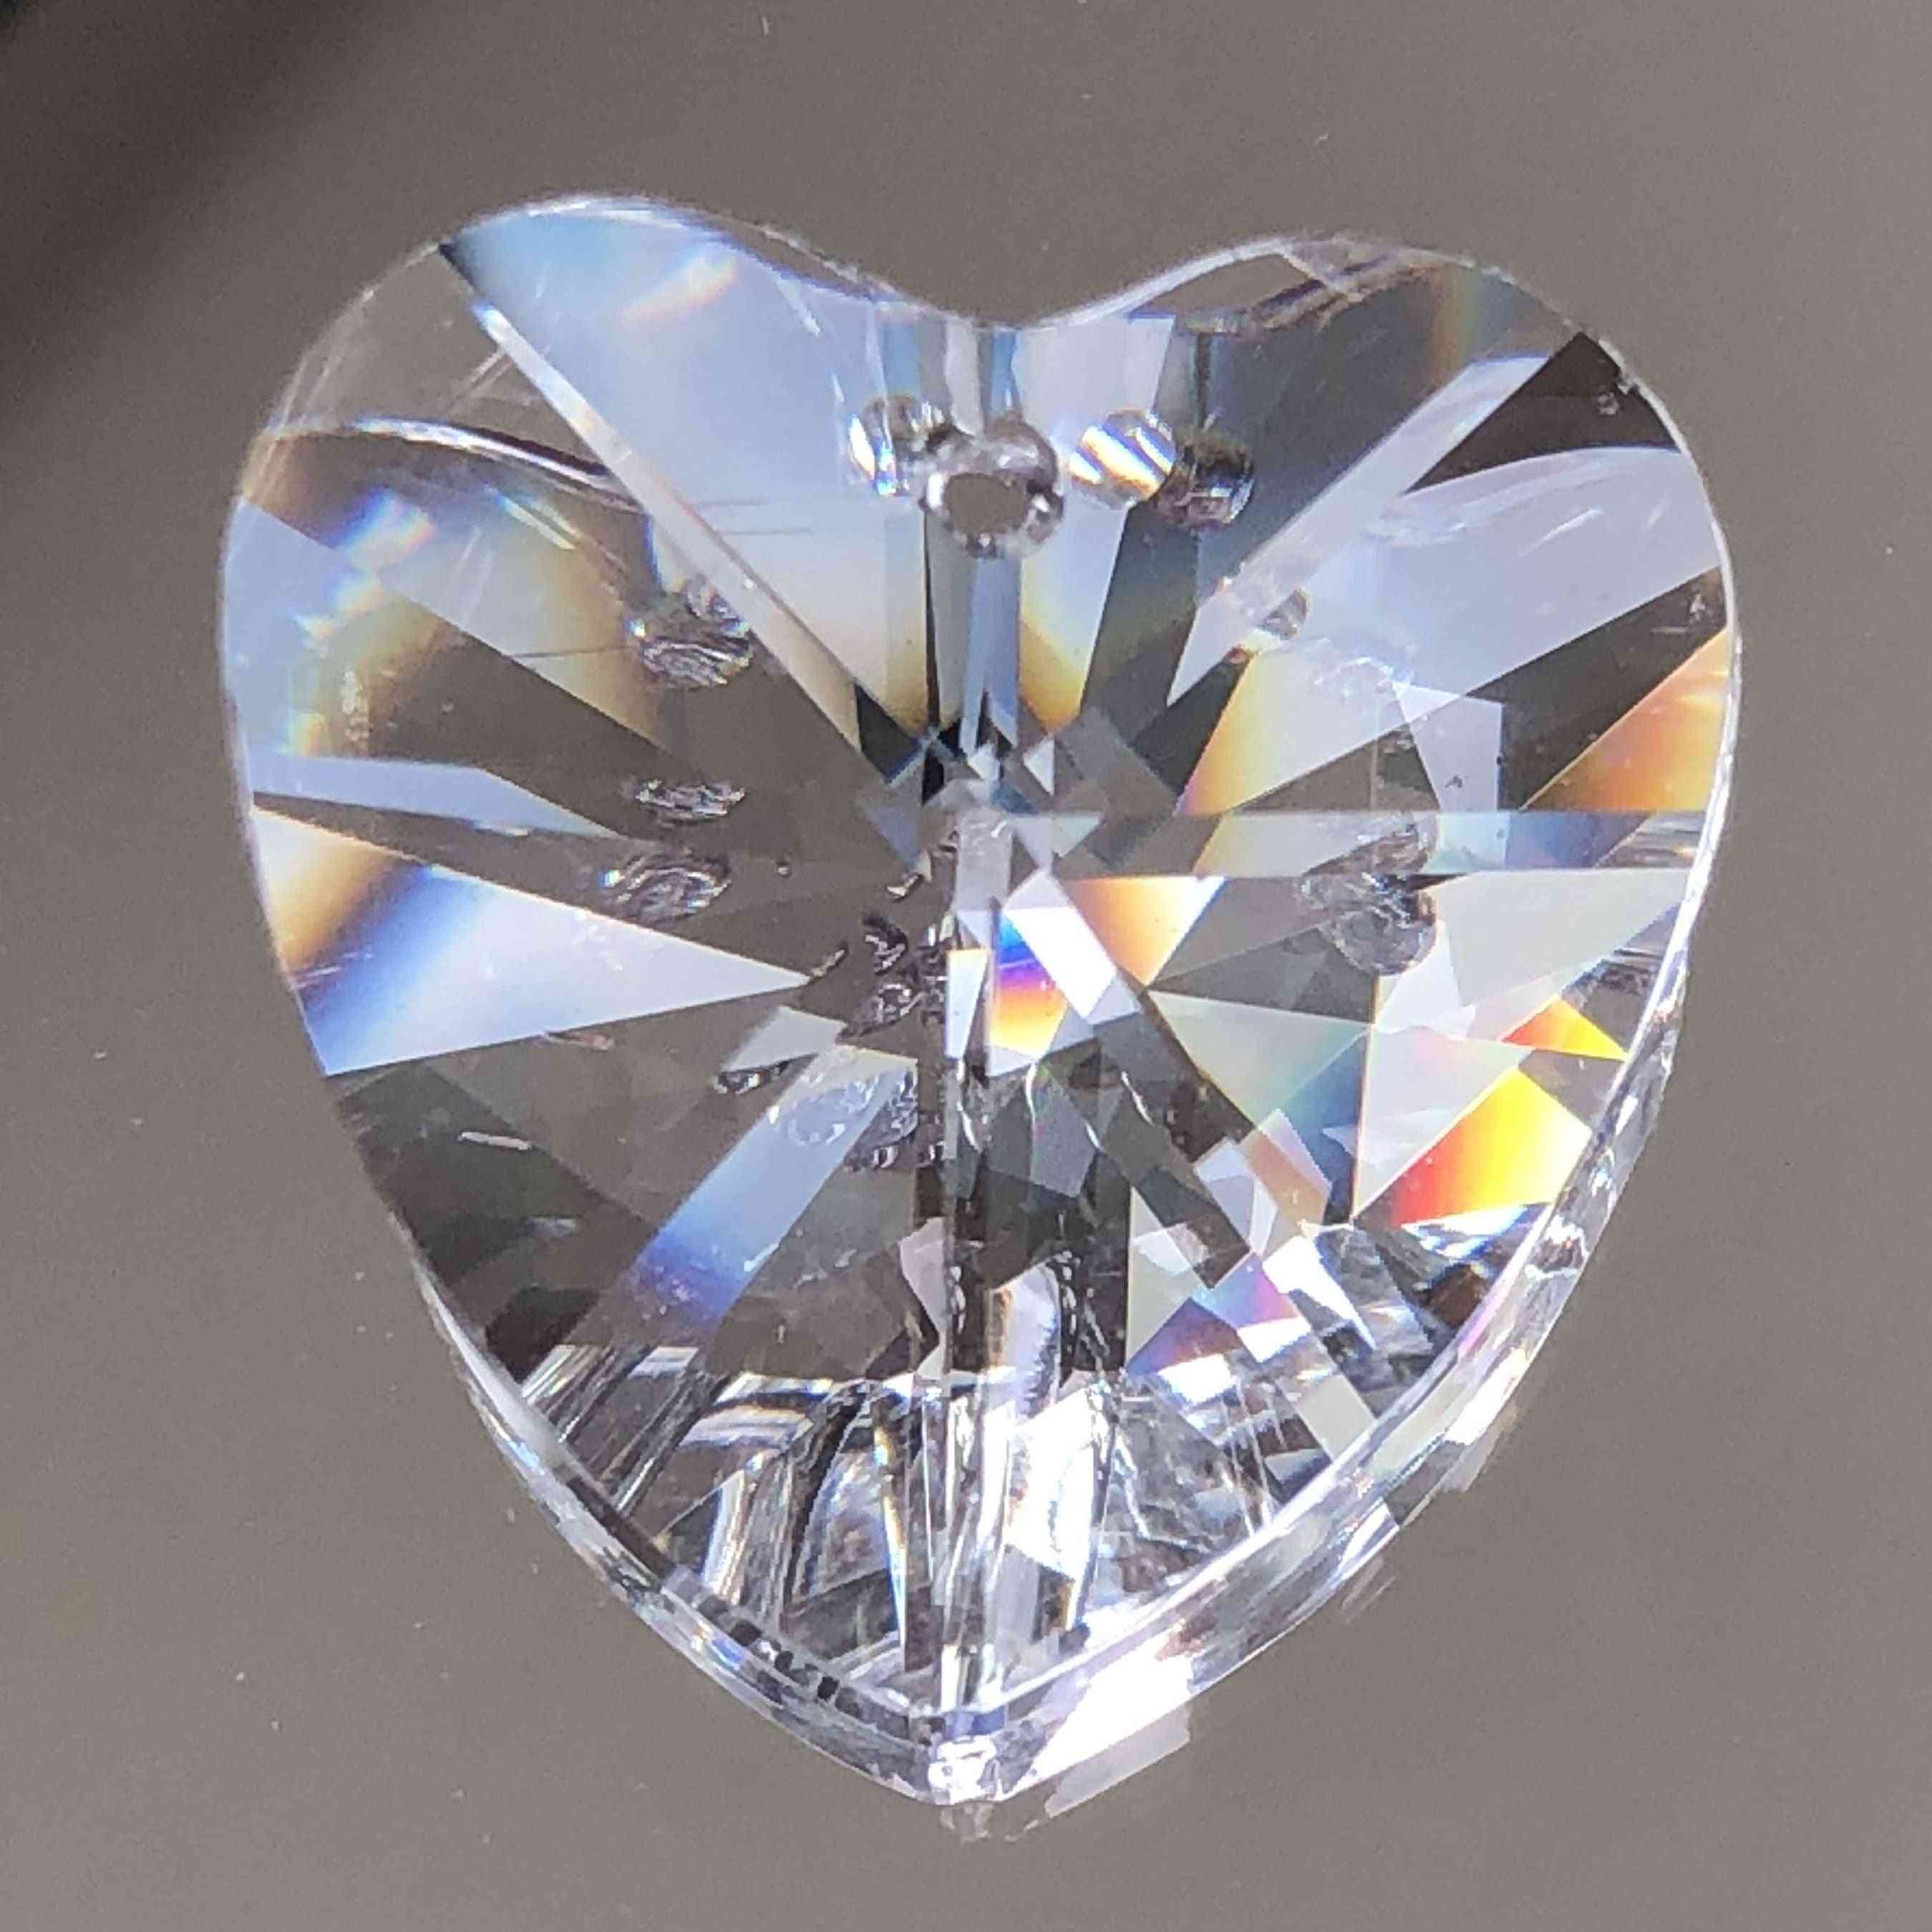 45mm hartvorm kristallen prisma's voor kroonluchter opknoping, hanger, suncatcher, glaskunst, home decor, diy -